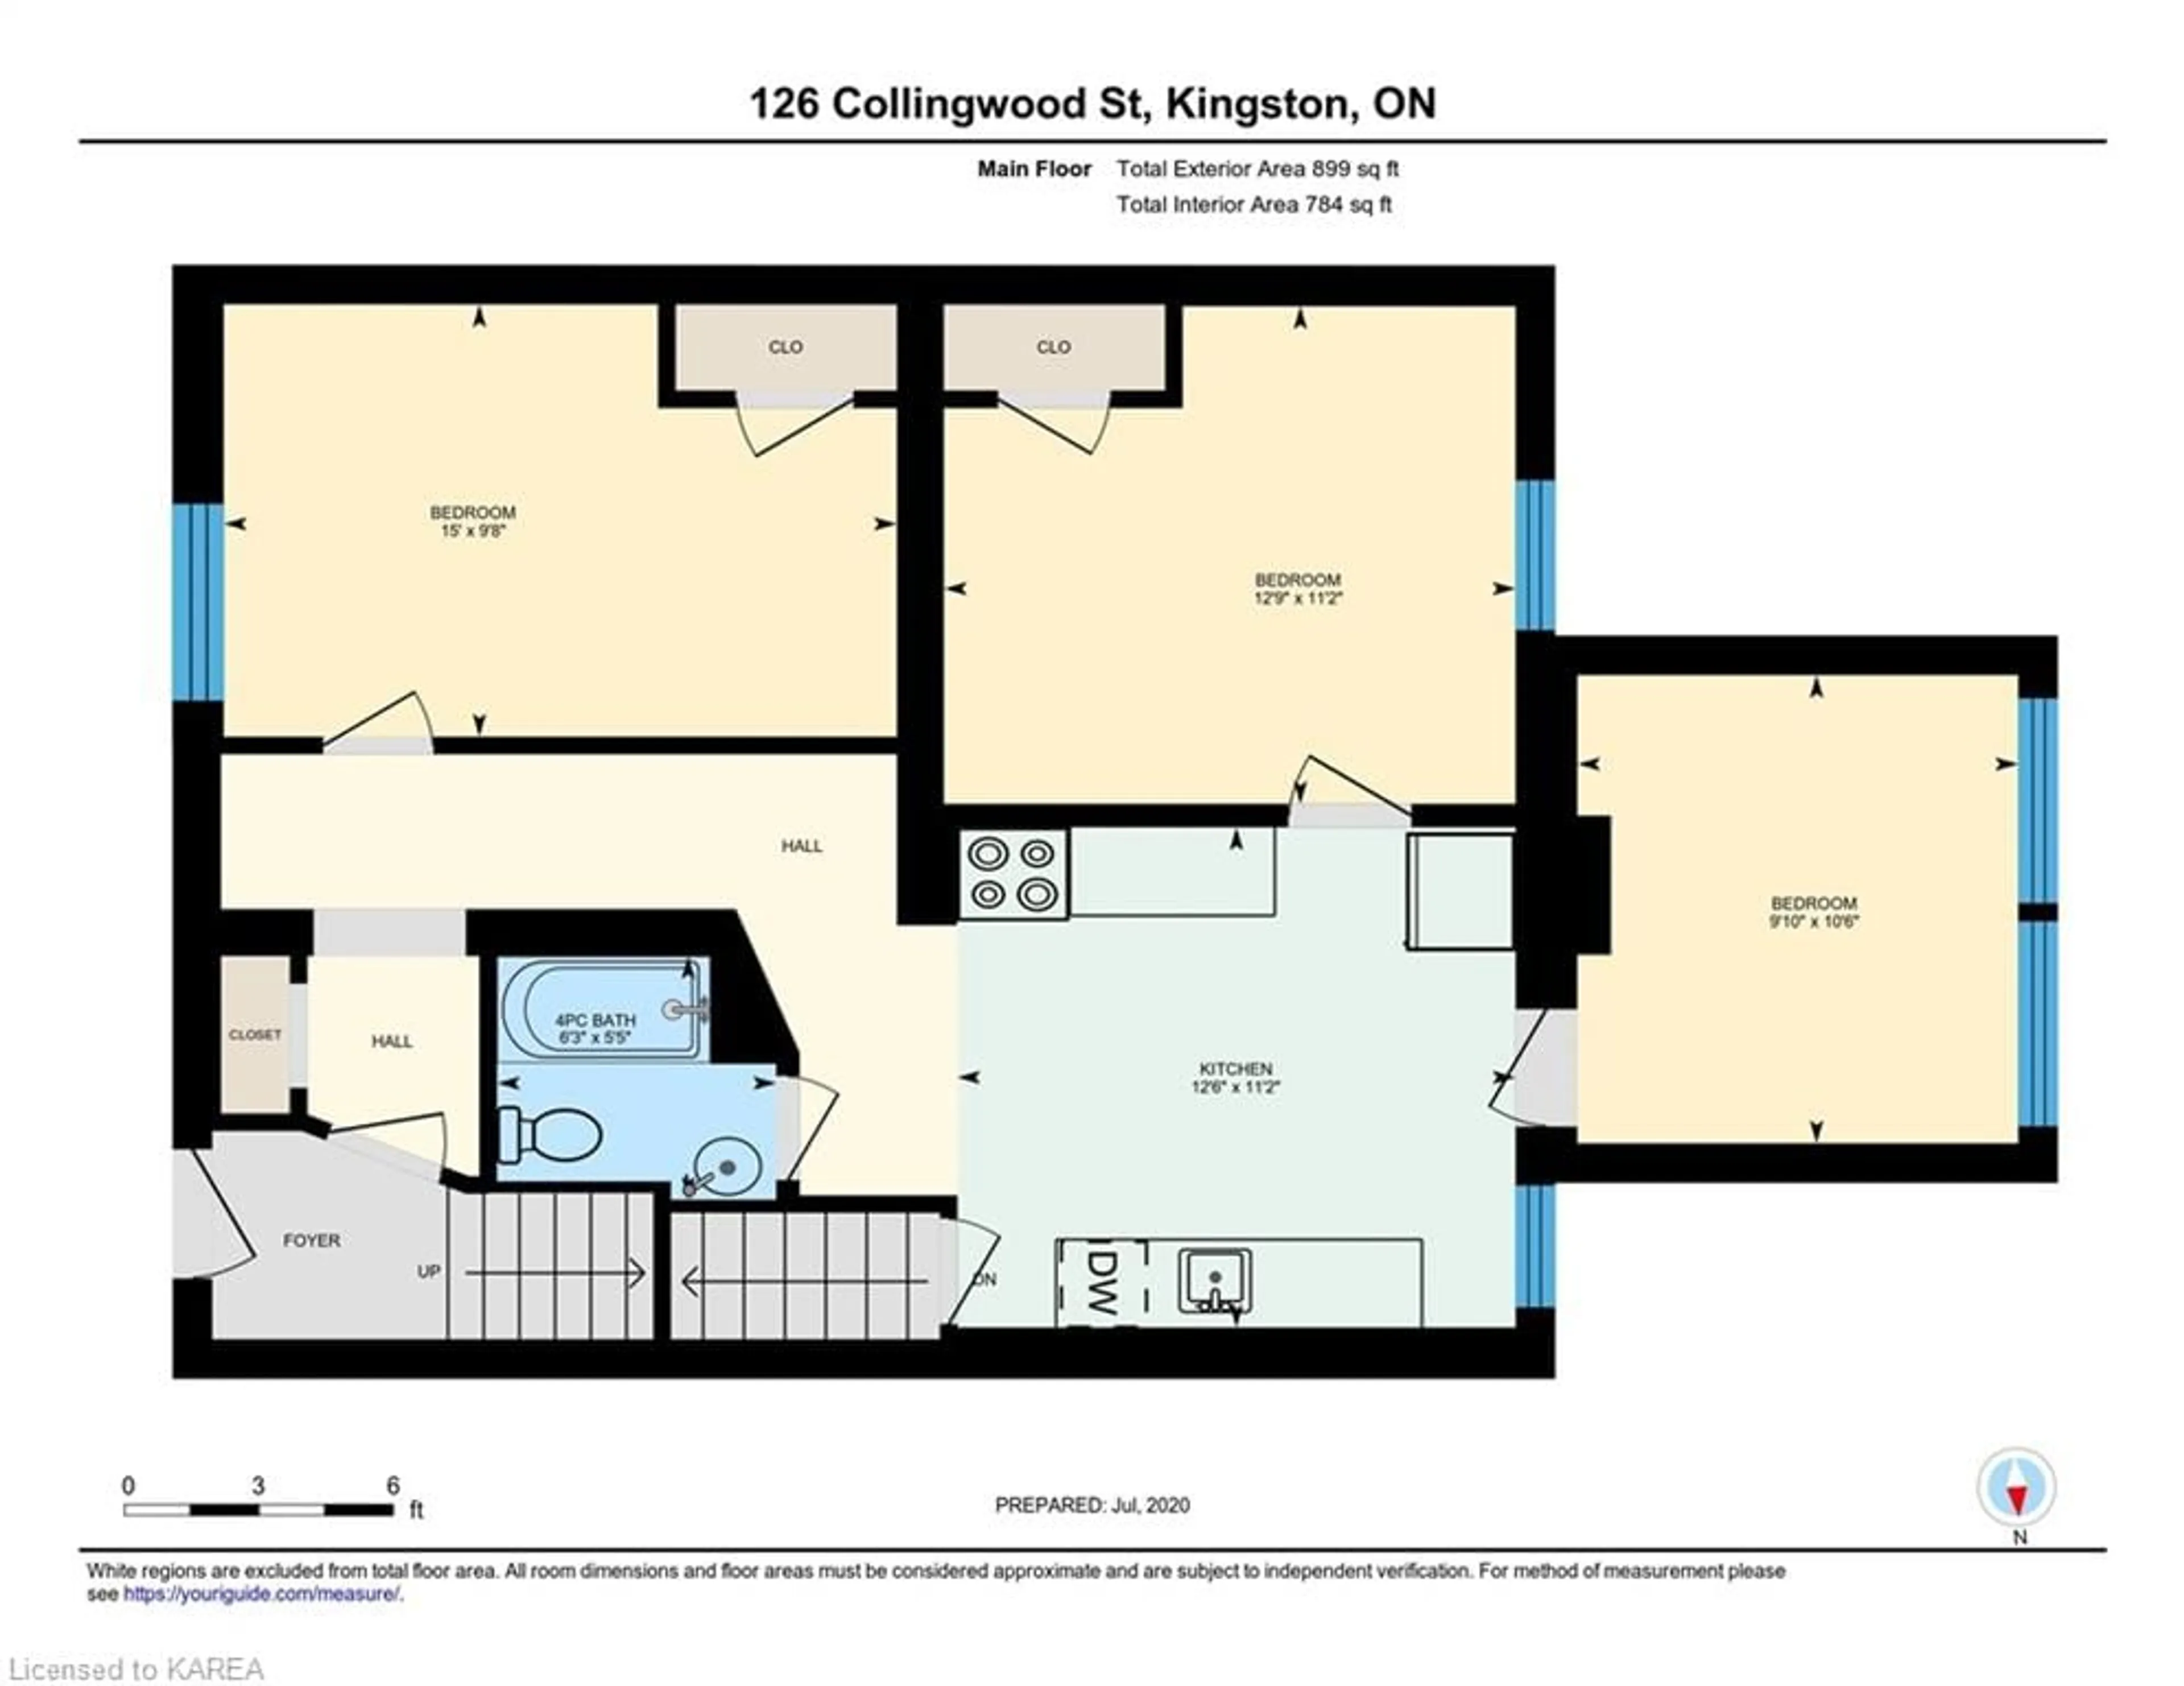 Floor plan for 126 Collingwood St, Kingston Ontario K7L 3X5